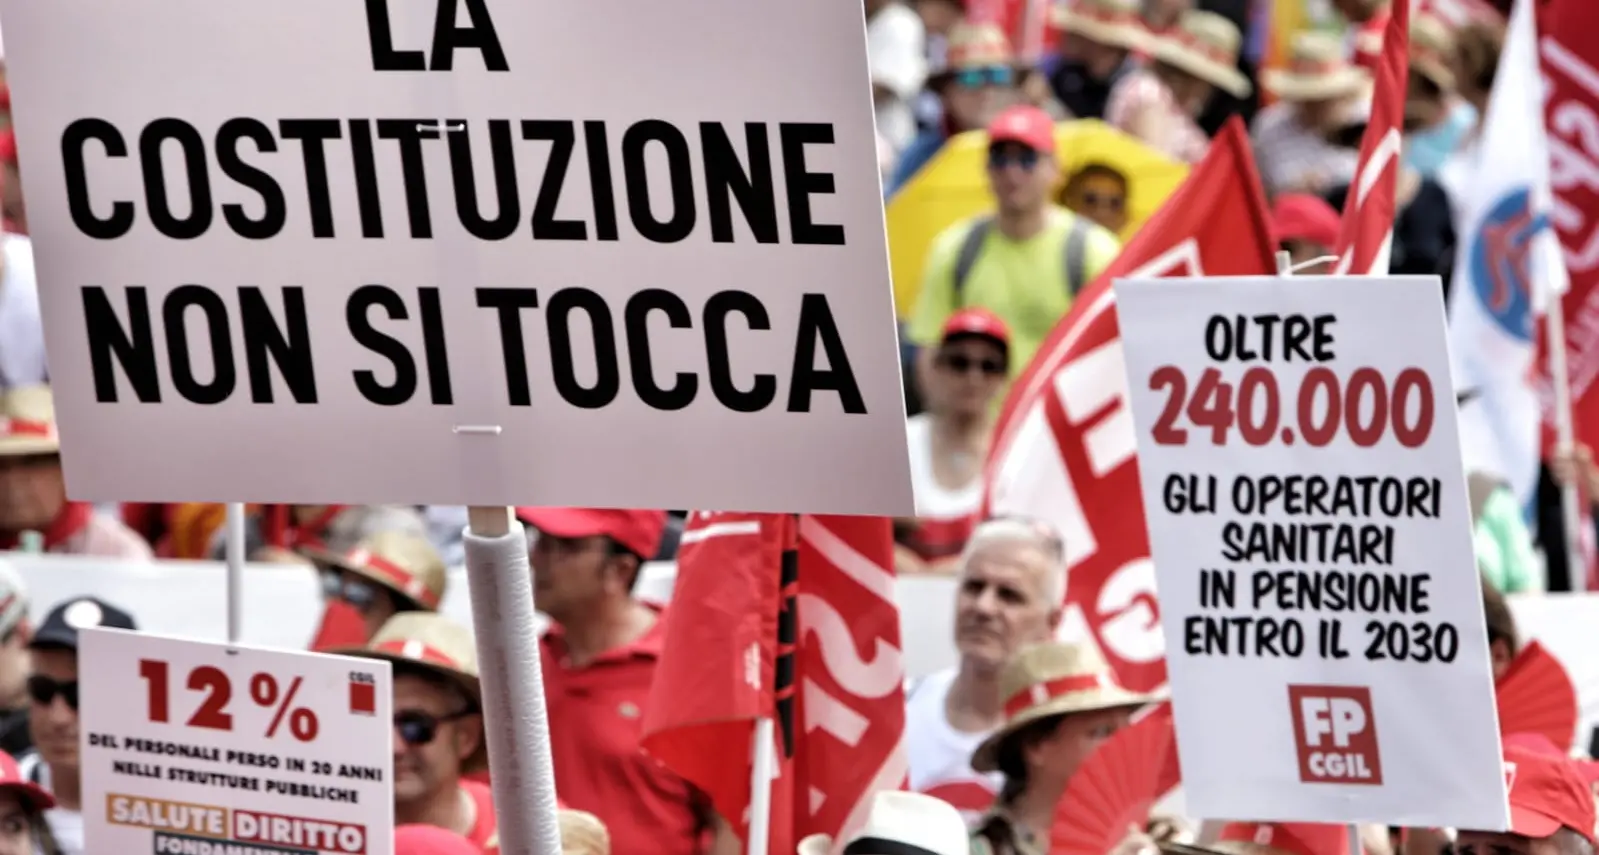 La mobilitazione prosegue: il 7 ottobre manifestazione a Roma per la Costituzione